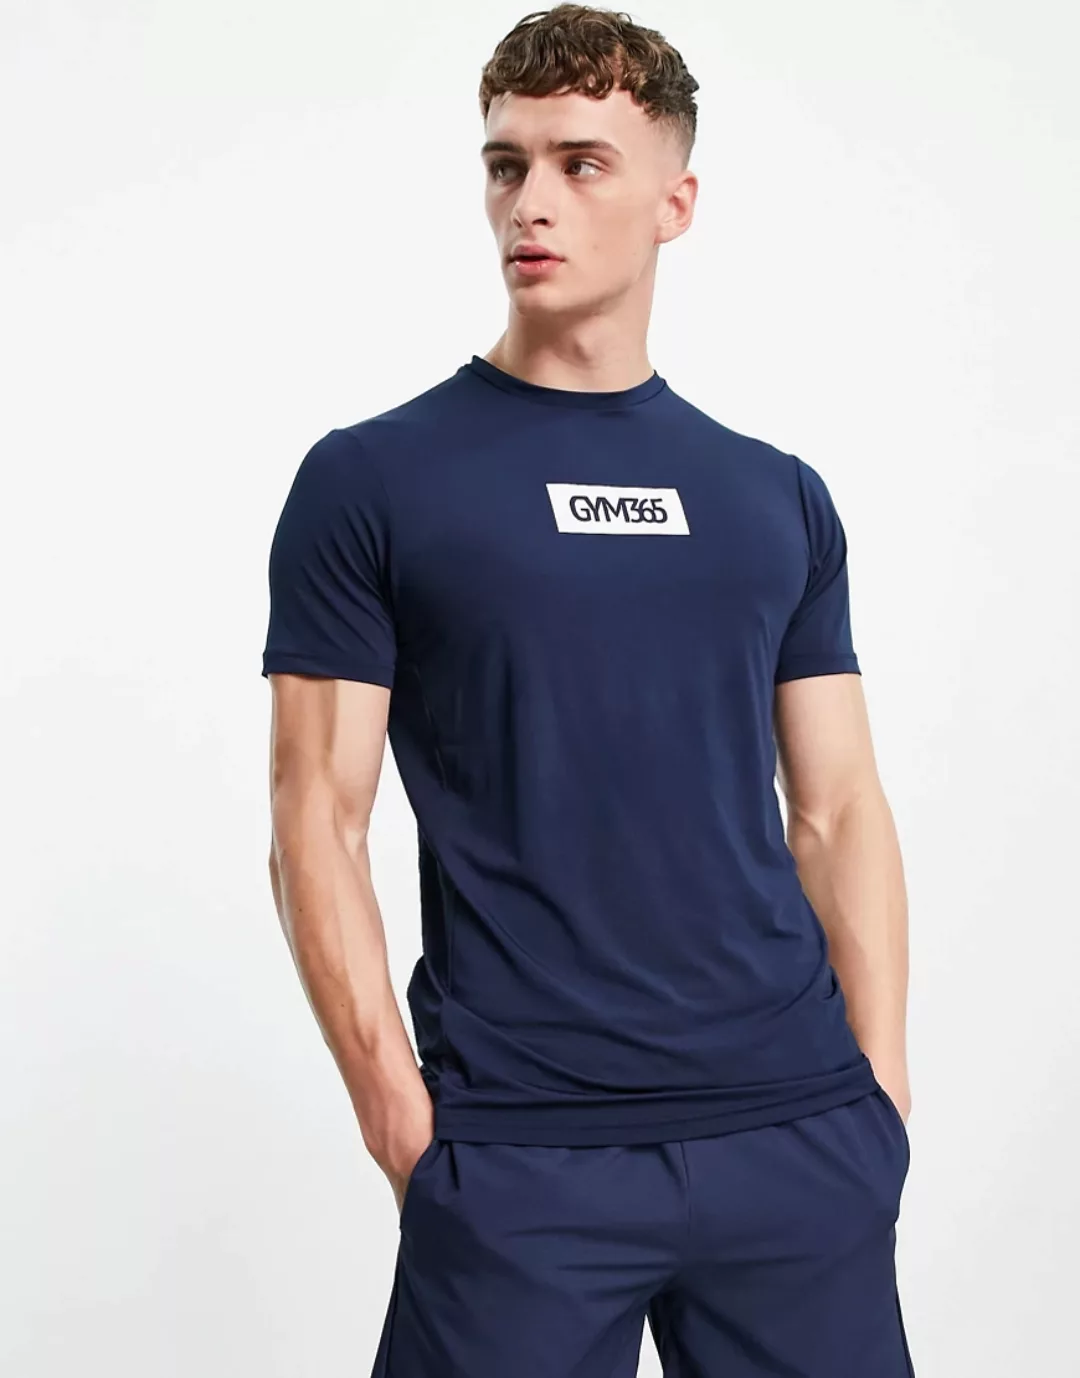 Gym 365 – T-Shirt in Marineblau mit kastenförmigem Logo günstig online kaufen